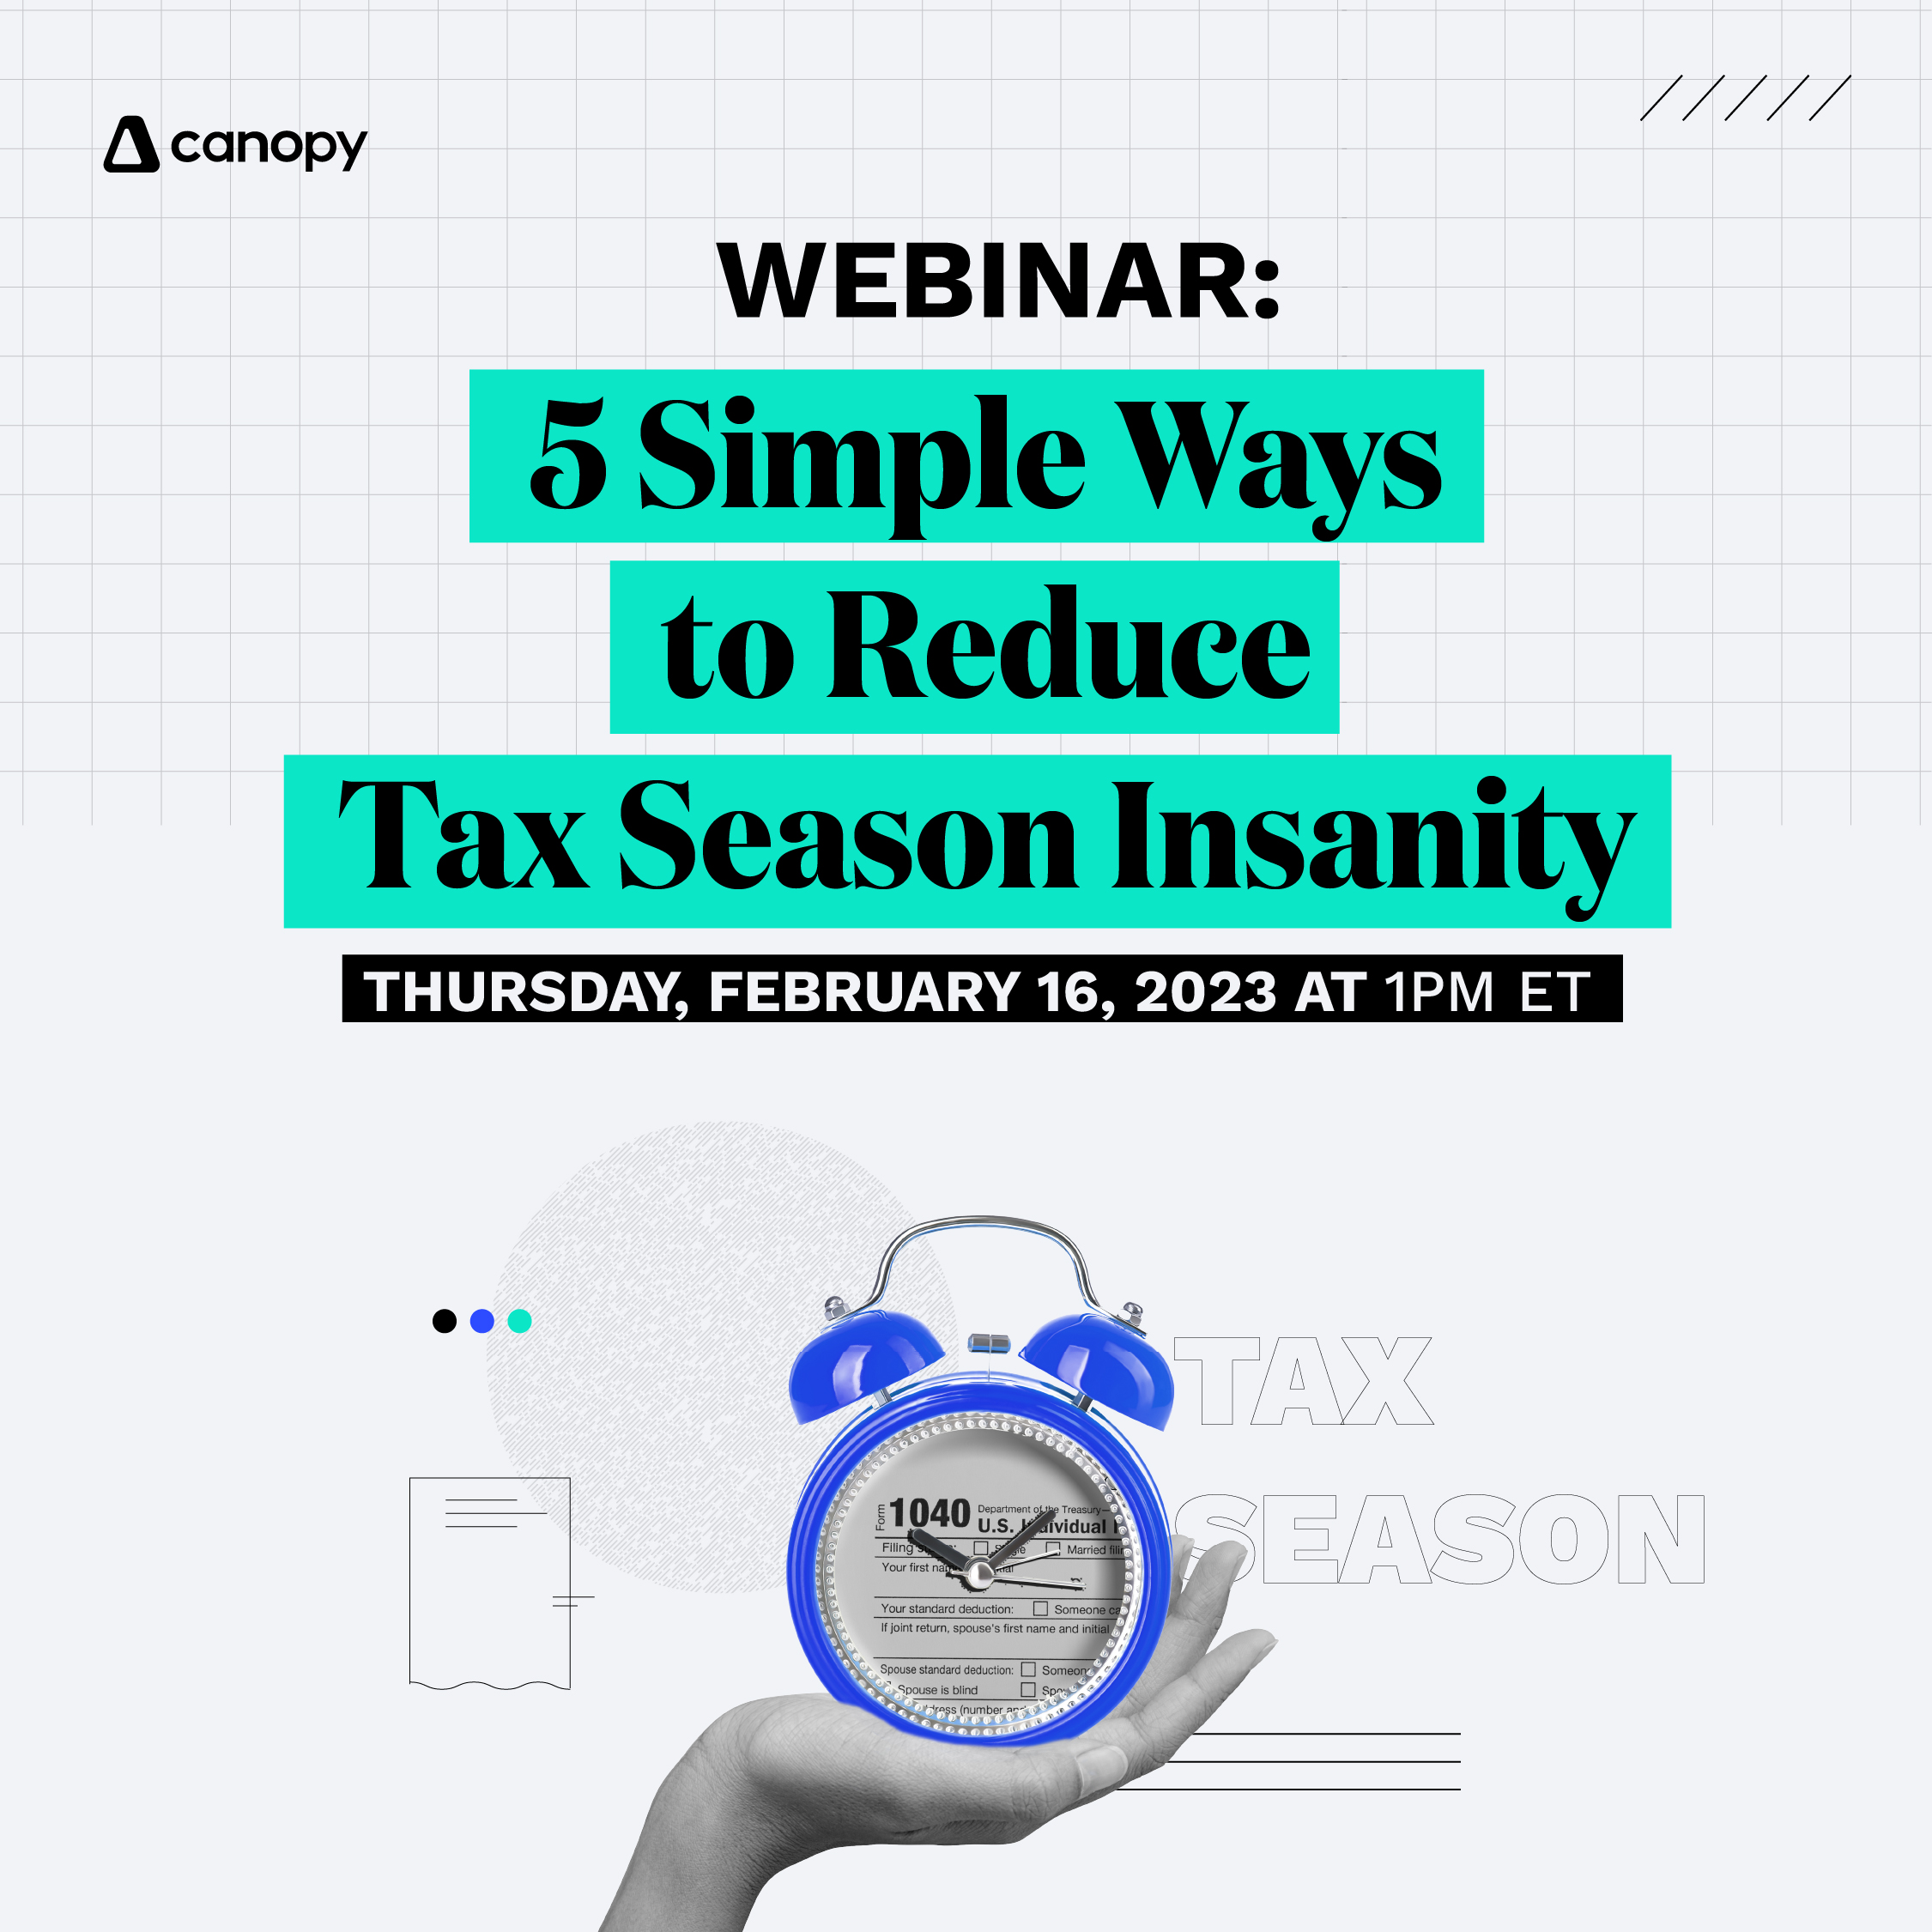 5 Simple Ways to Reduce Tax Season Insanity